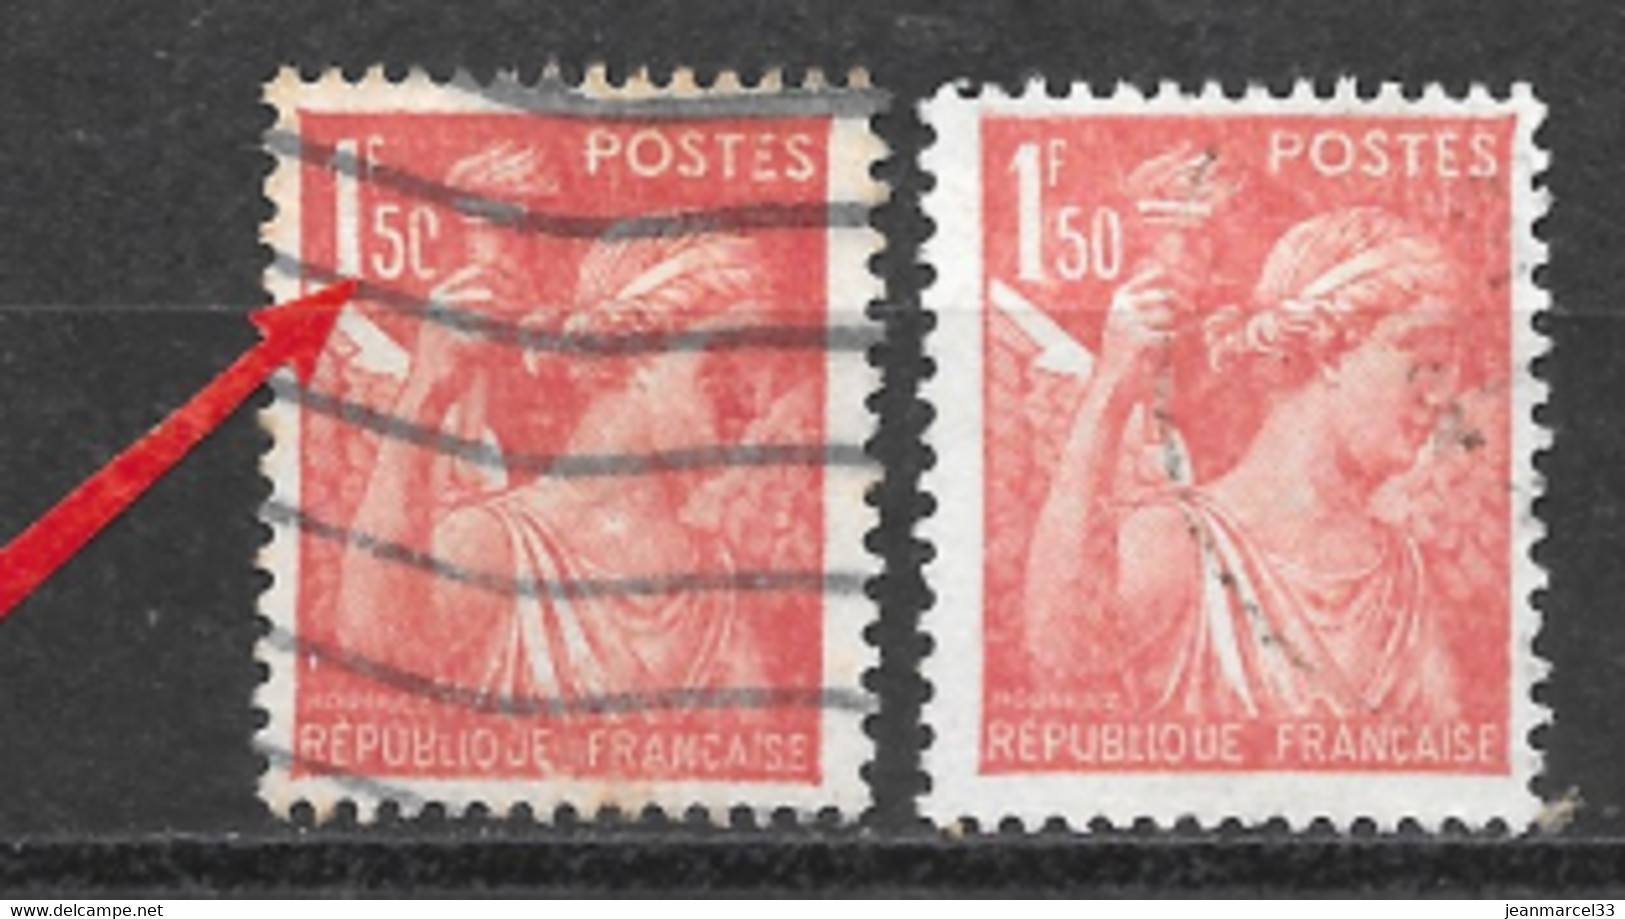 1f50 Iris Bistre Brun N° 652 (oblitérés) Variété Le 0 De 1f50 Ouvert En Bas  à Coté Du Normal - Used Stamps